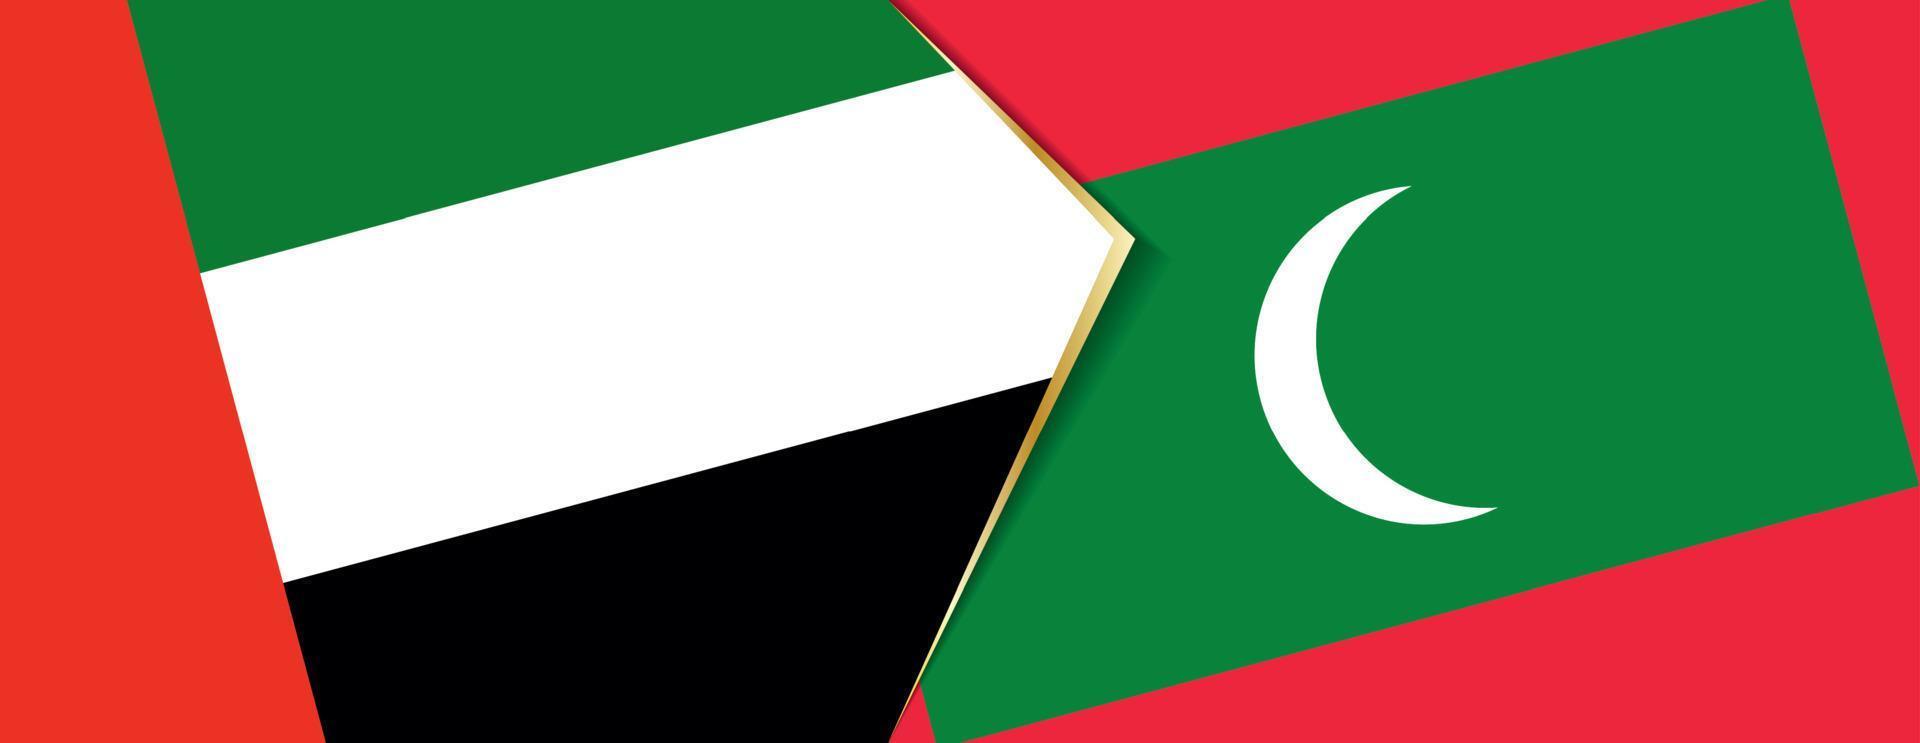 förenad arab emirates och maldiverna flaggor, två vektor flaggor.